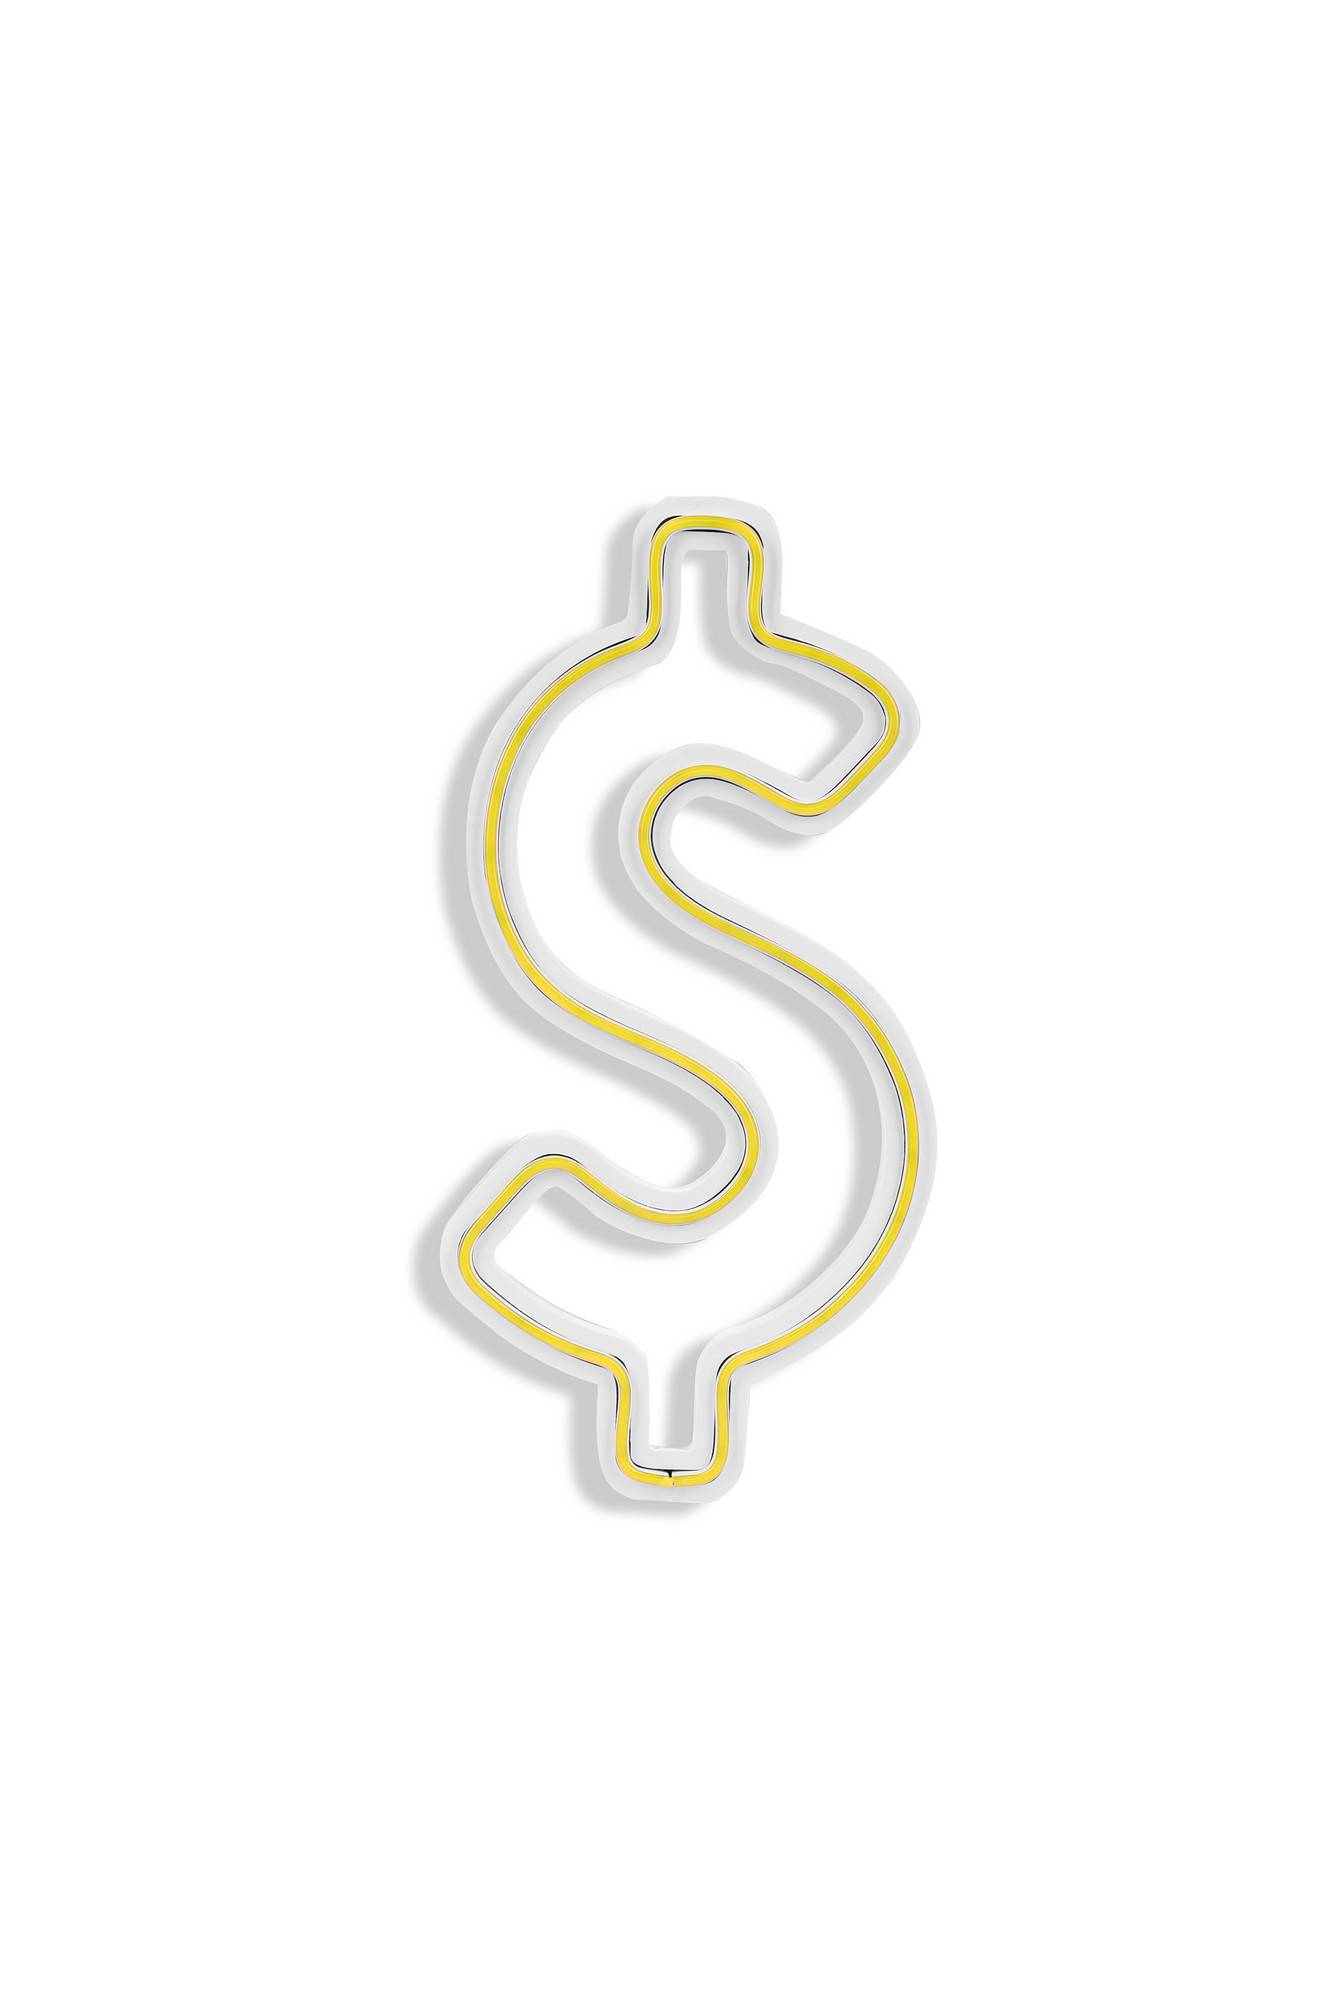 Luz LED de decoración Símbolo del dólar Lucendi 15,5 x 31,5 cm Neón plástico flexible PVC Amarillo